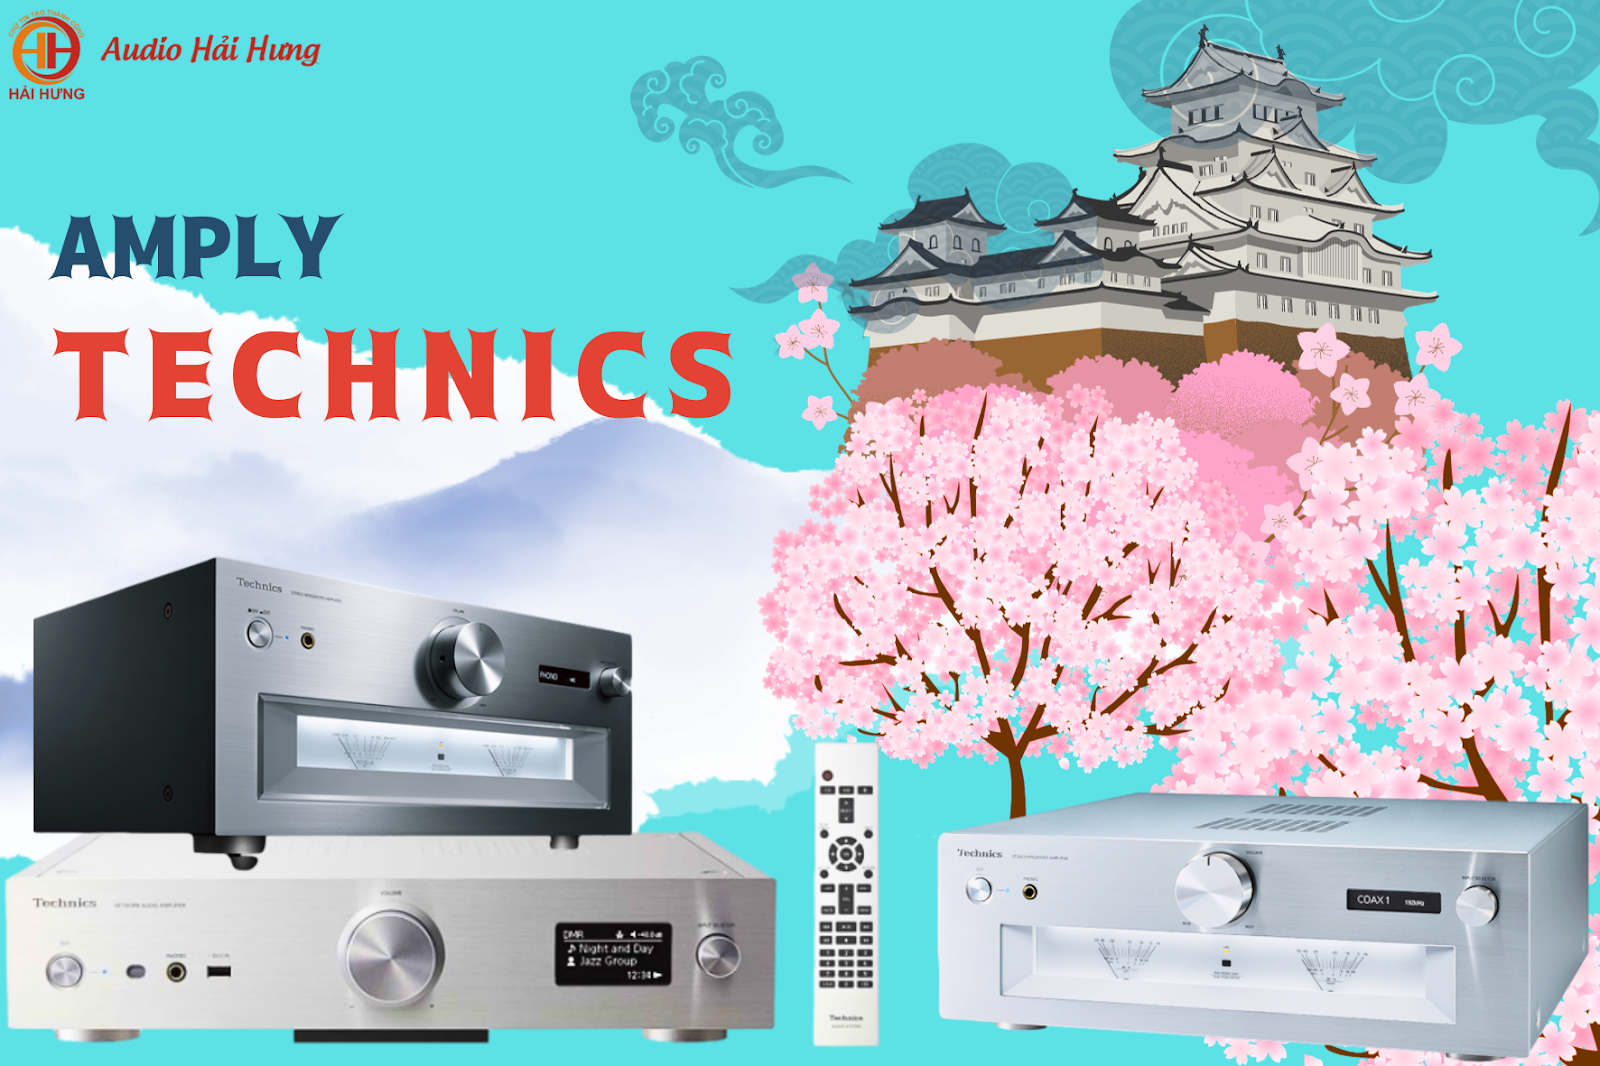 Amply Technics là thương hiệu đến từ Nhật Bản